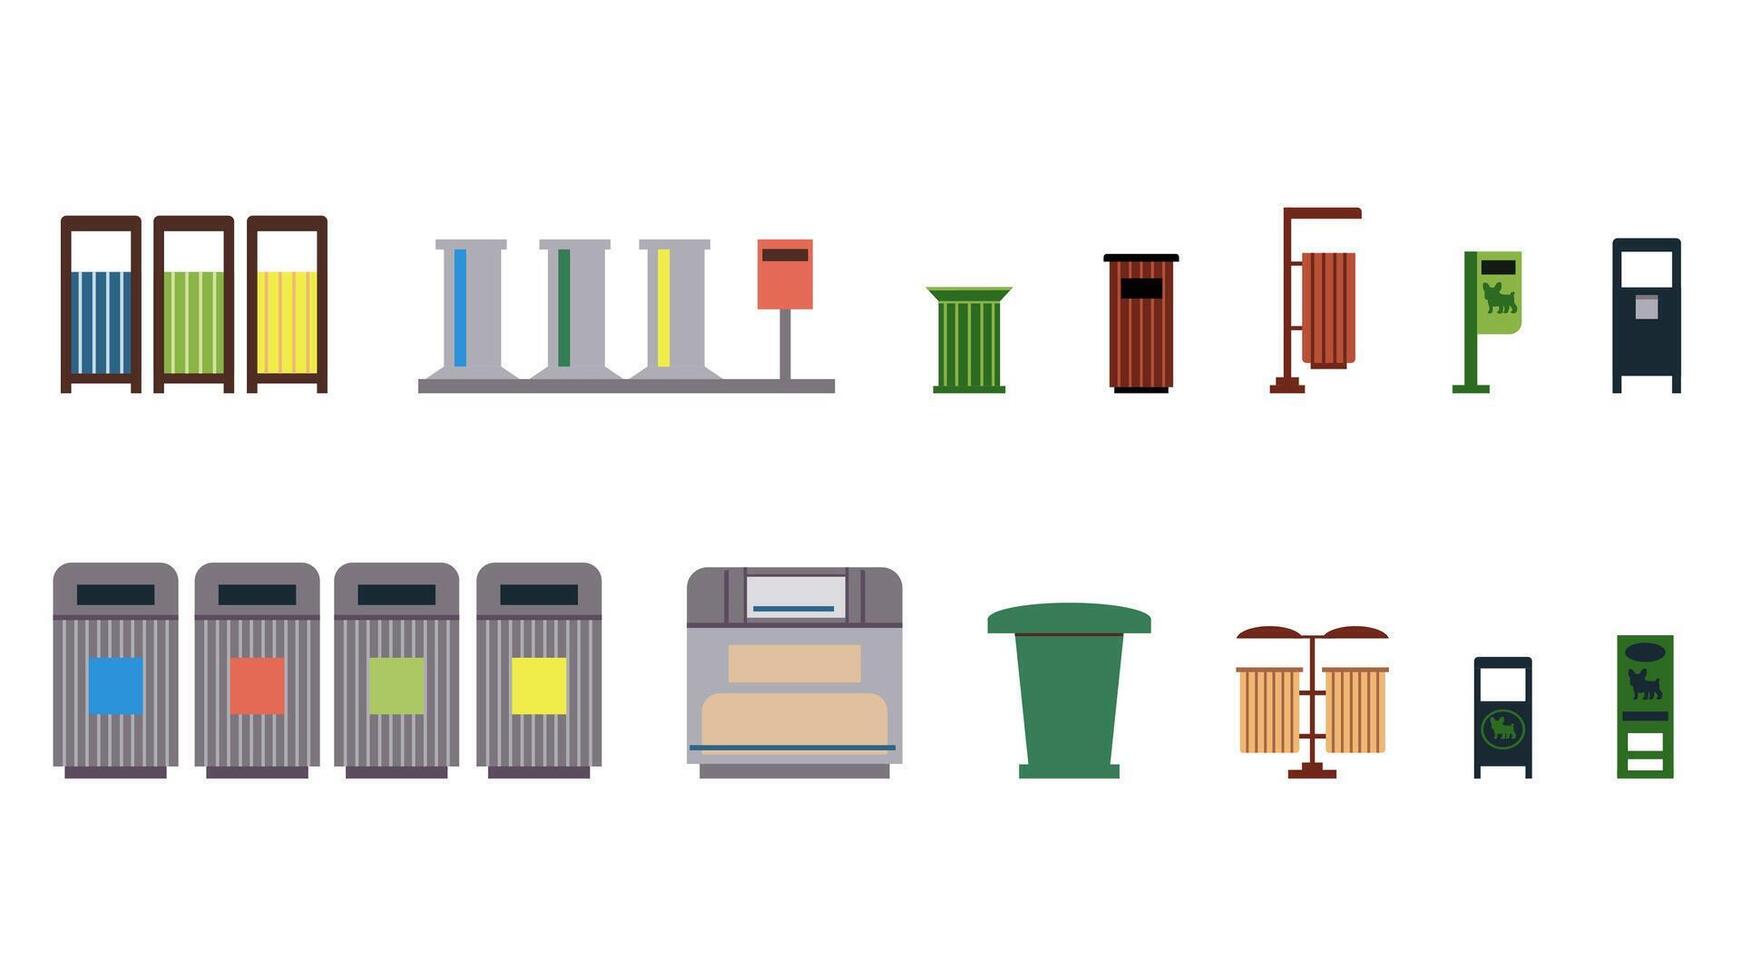 colección de dieciséis basura latas, basura latas para basura separación, parque papeleras, contenedores para perro desperdiciar. elementos de urbano infraestructura y urbano parque, ilustraciones en un plano estilo. vector